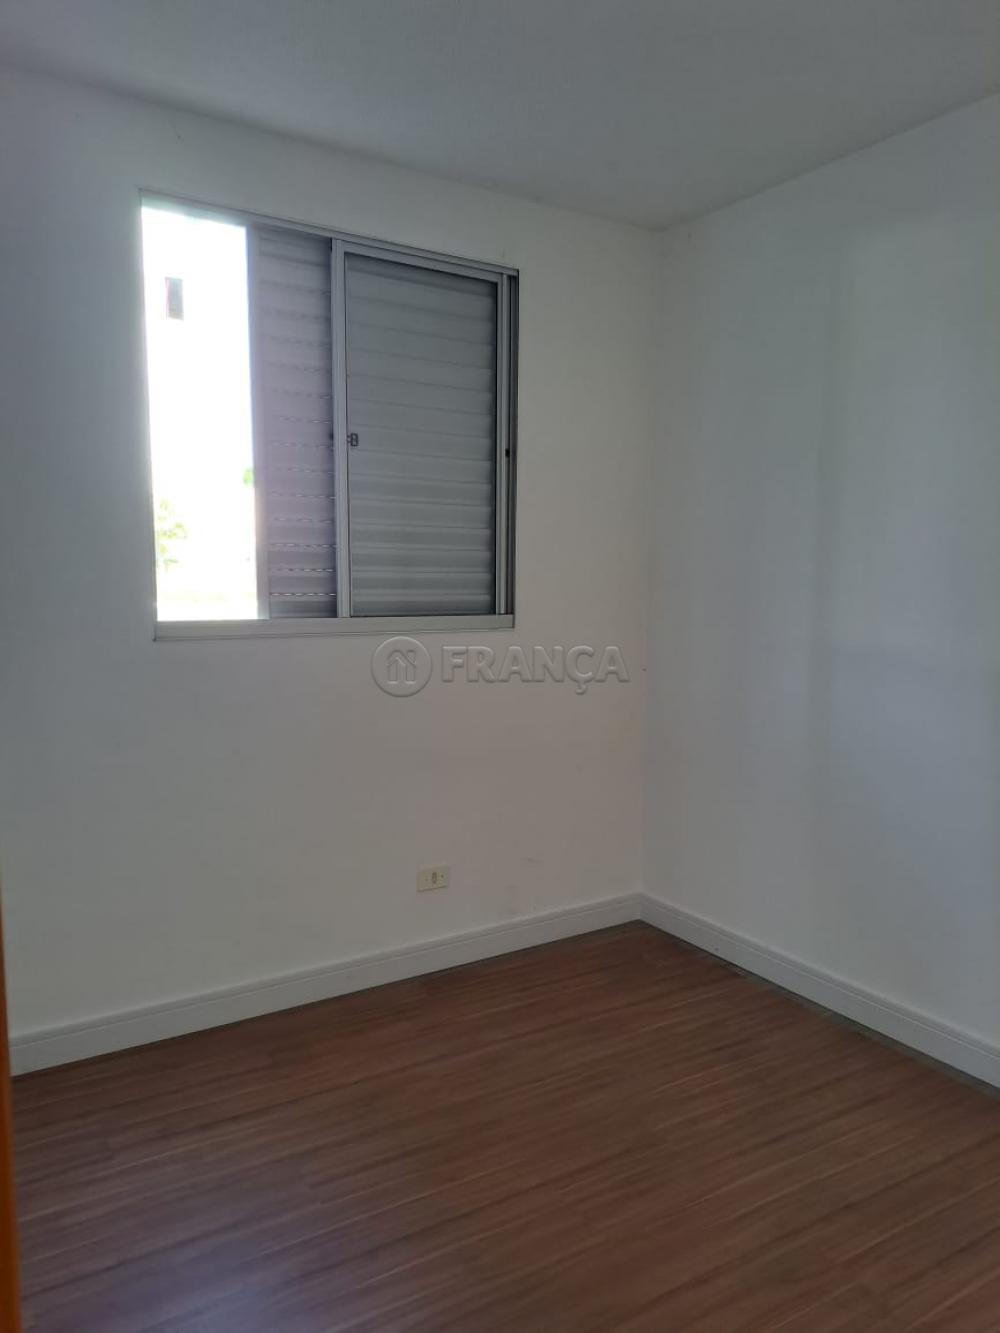 Comprar Apartamento / Padrão em Jacareí R$ 180.000,00 - Foto 4